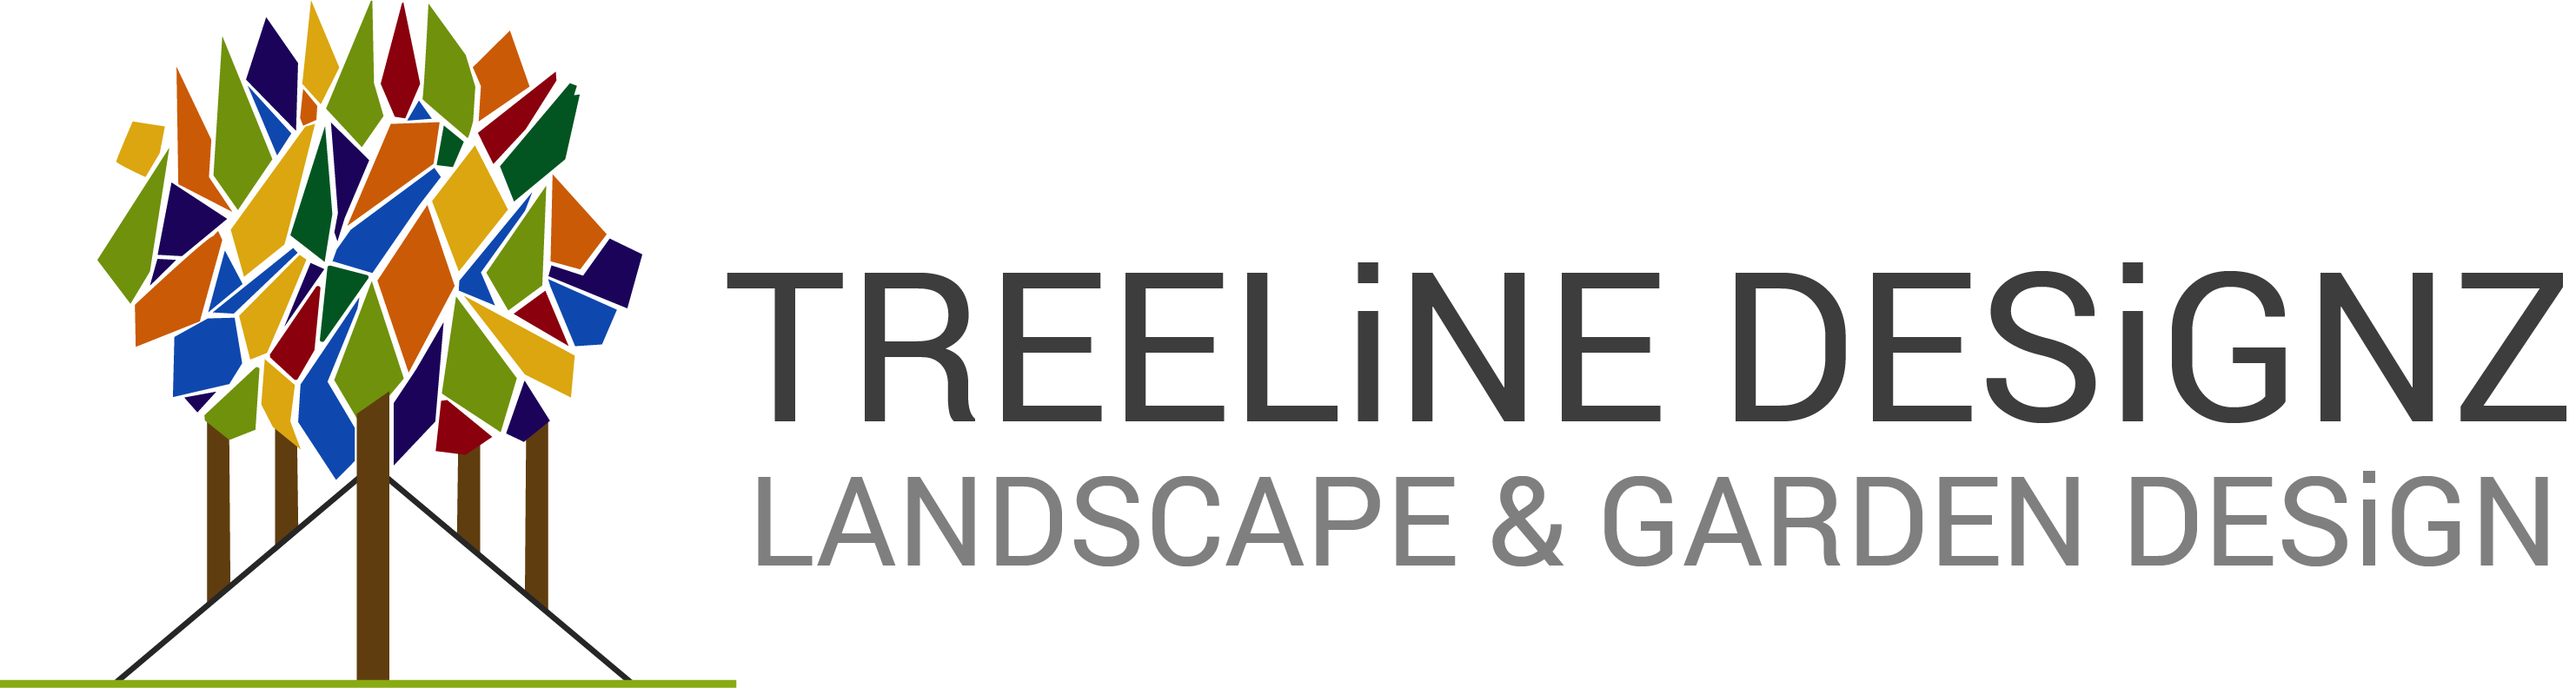 Treeline Designz